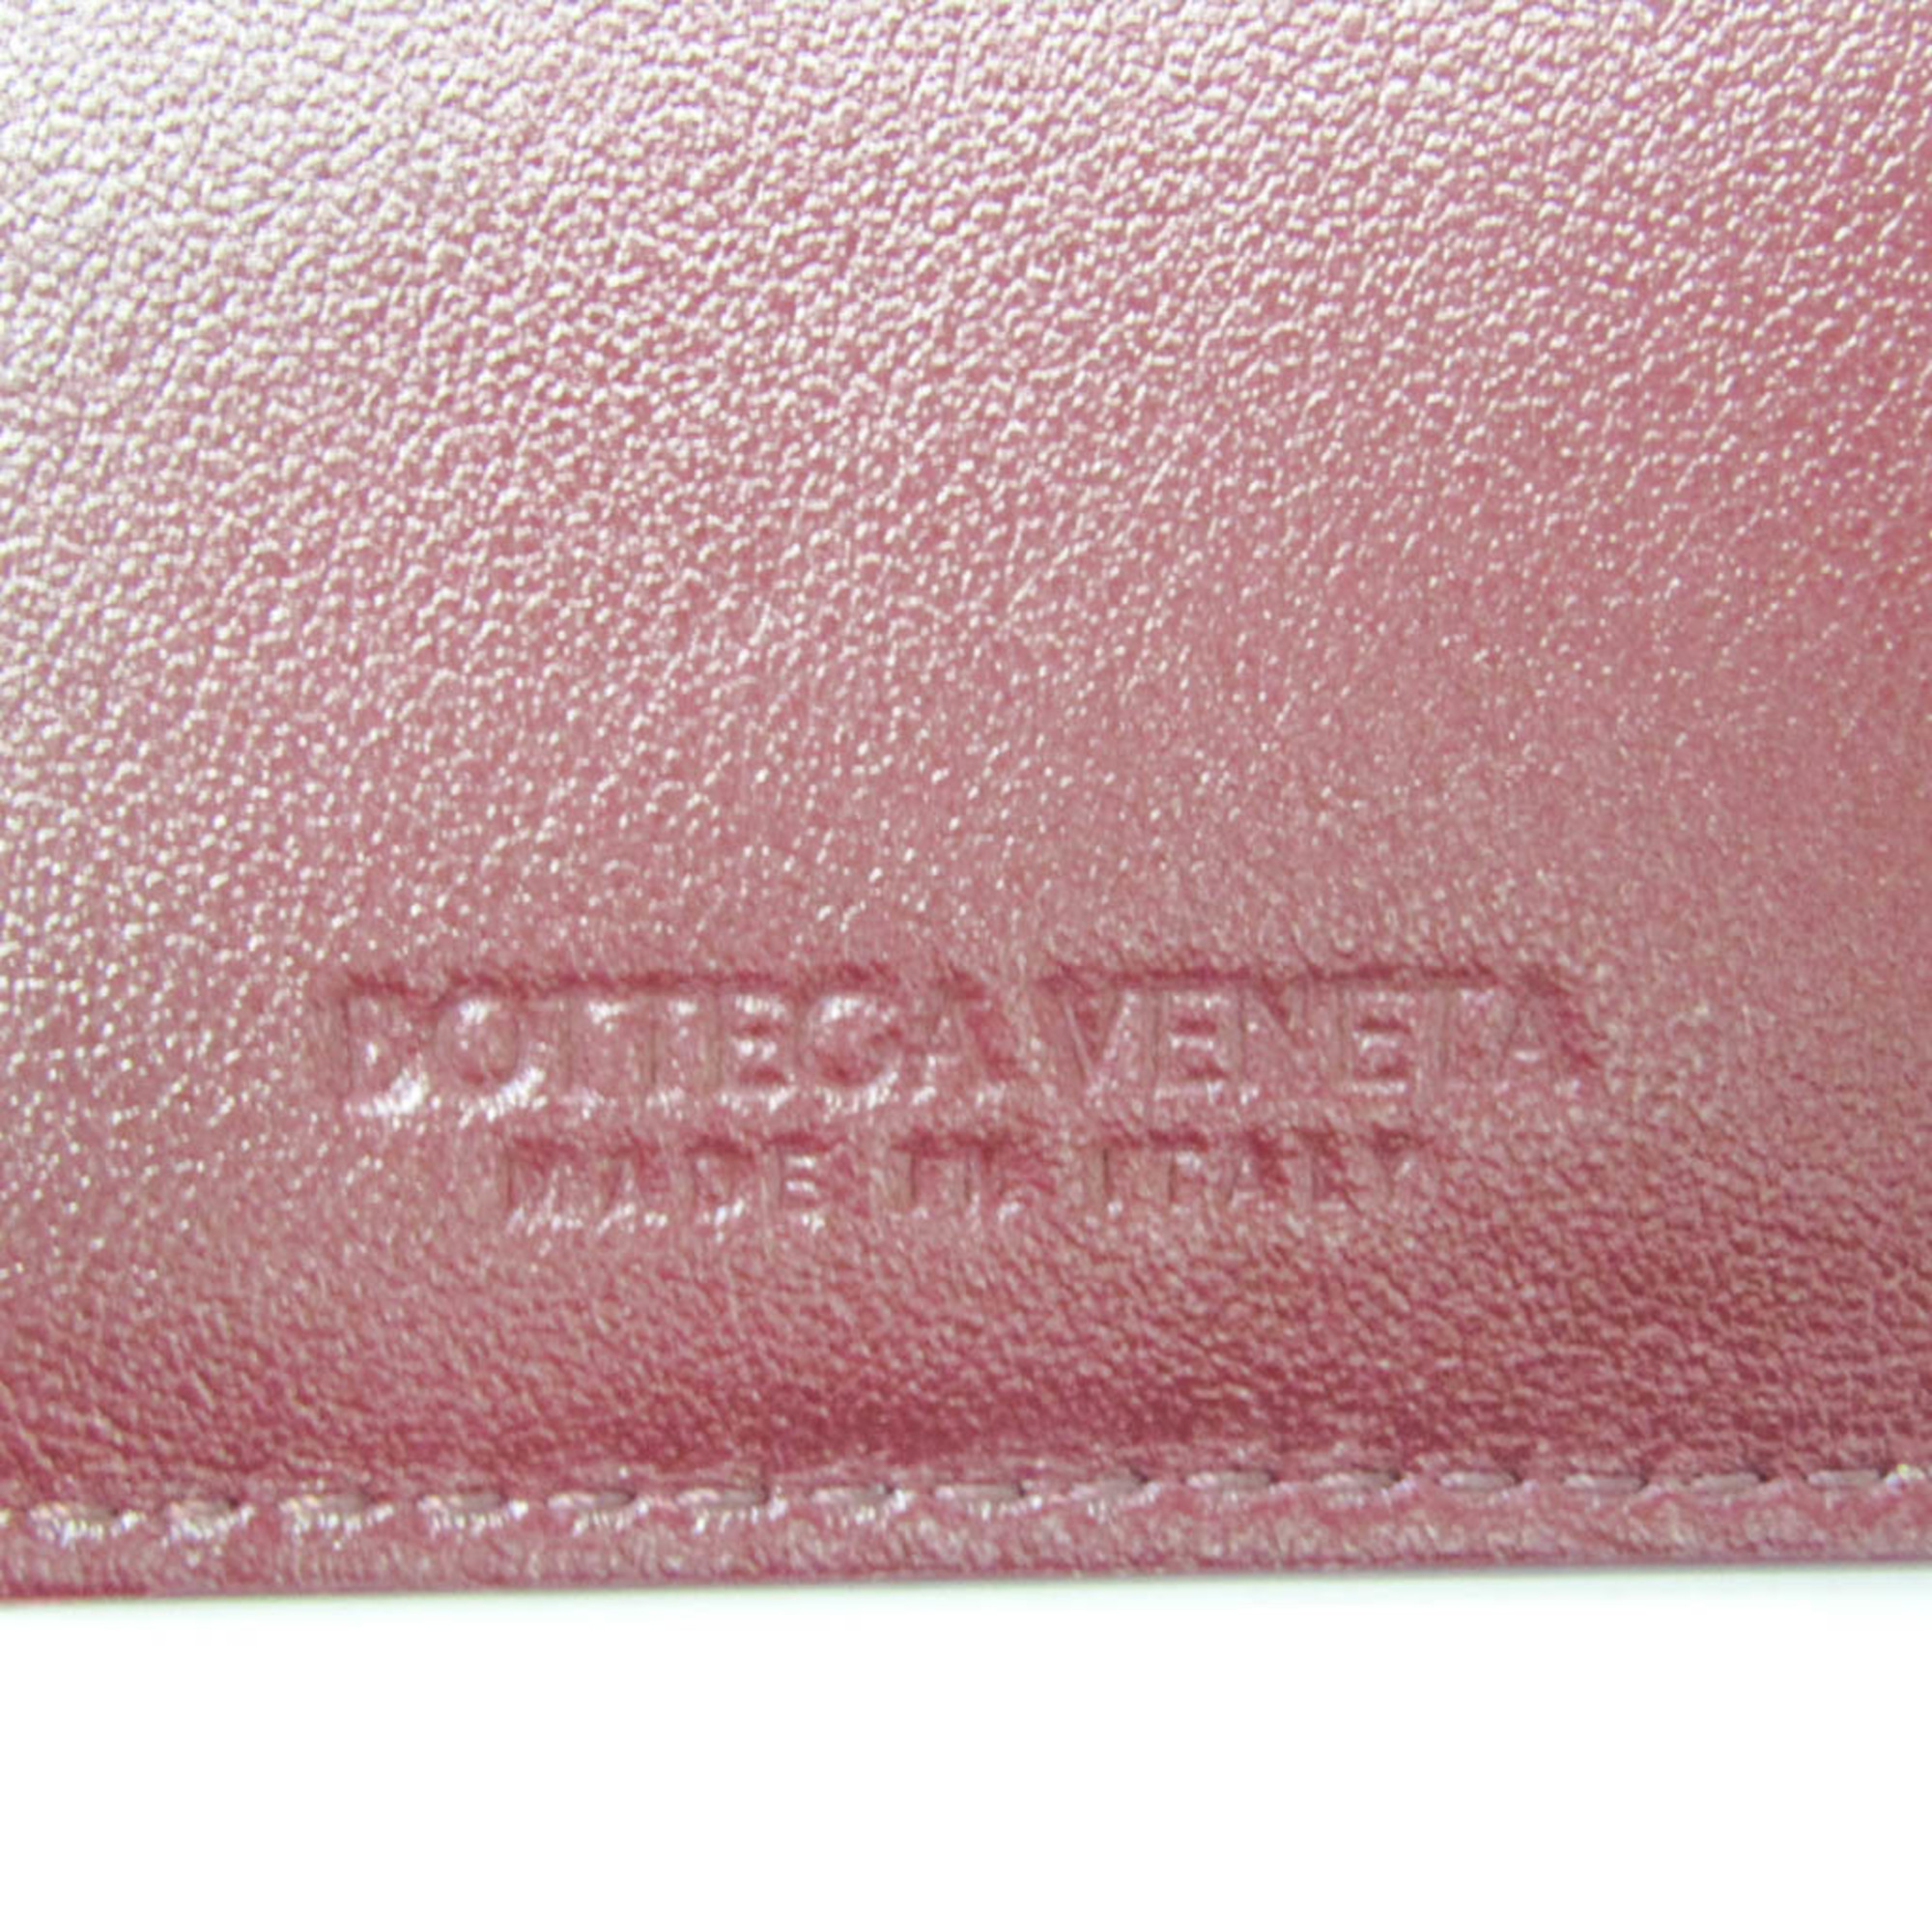 ボッテガ・ヴェネタ(Bottega Veneta) イントレチャート 593025 レディース,メンズ レザー キーケース ボルドー